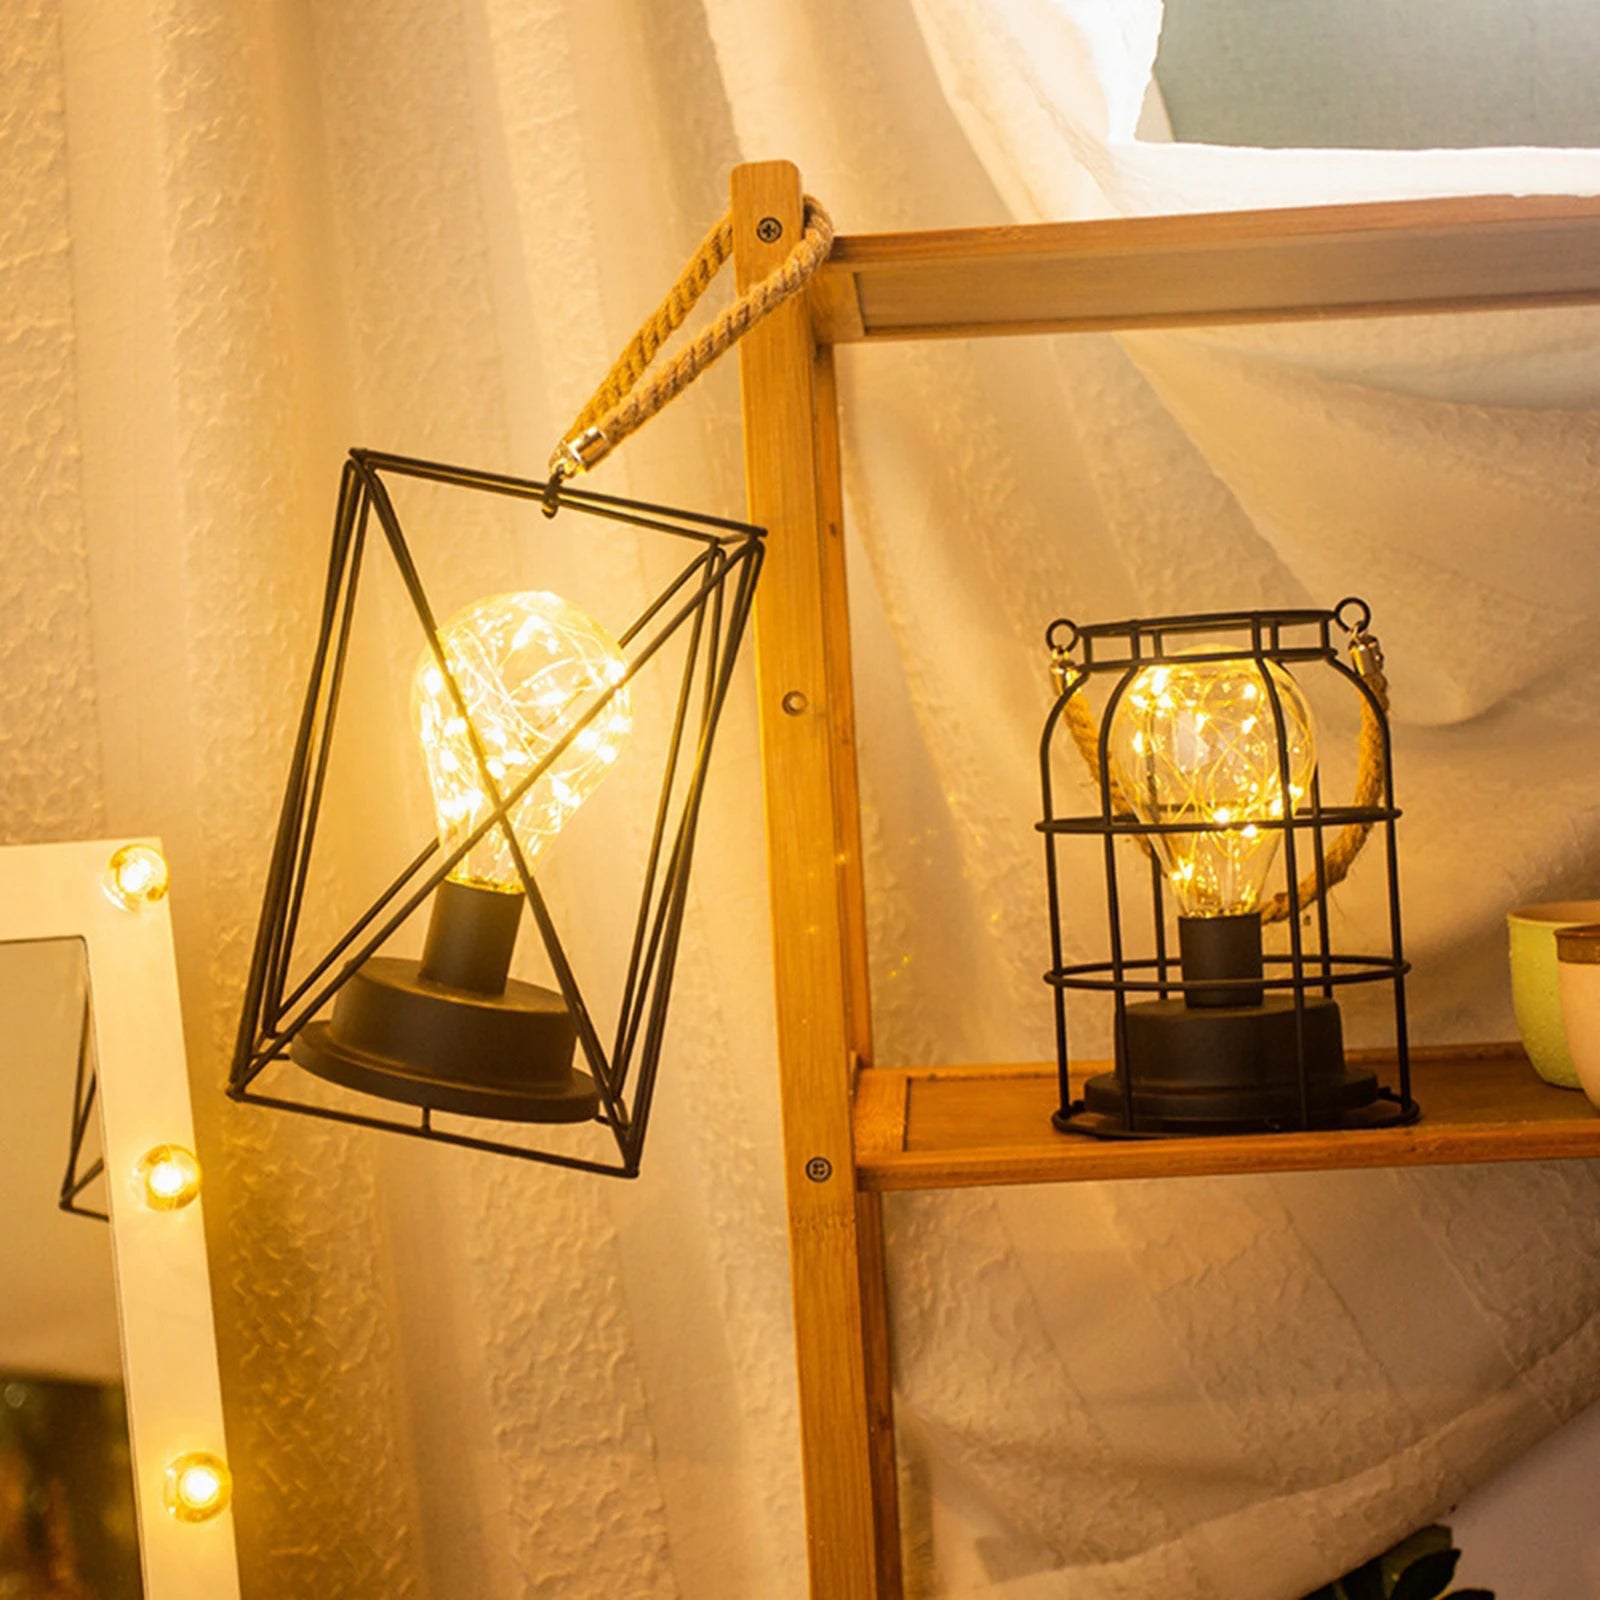 Lampe de table en métal, ampoule veilleuse lampe de chevet lampadaire,  lampe de bureau en fer de style nordique à piles lumière de nuit créative  éclairage décoratif (lanterne)